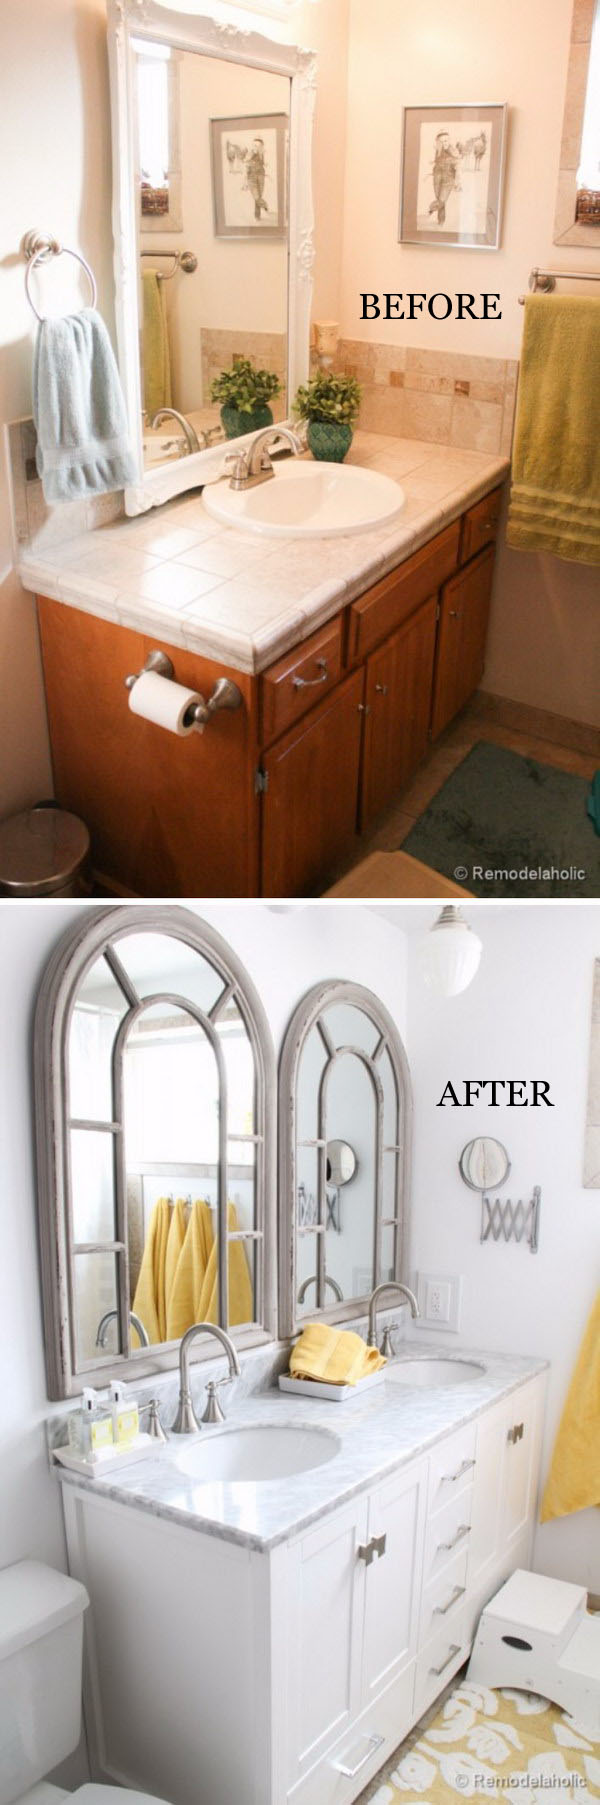 From Single Sink Vanity to Double Sink Bathroom Remodel. 